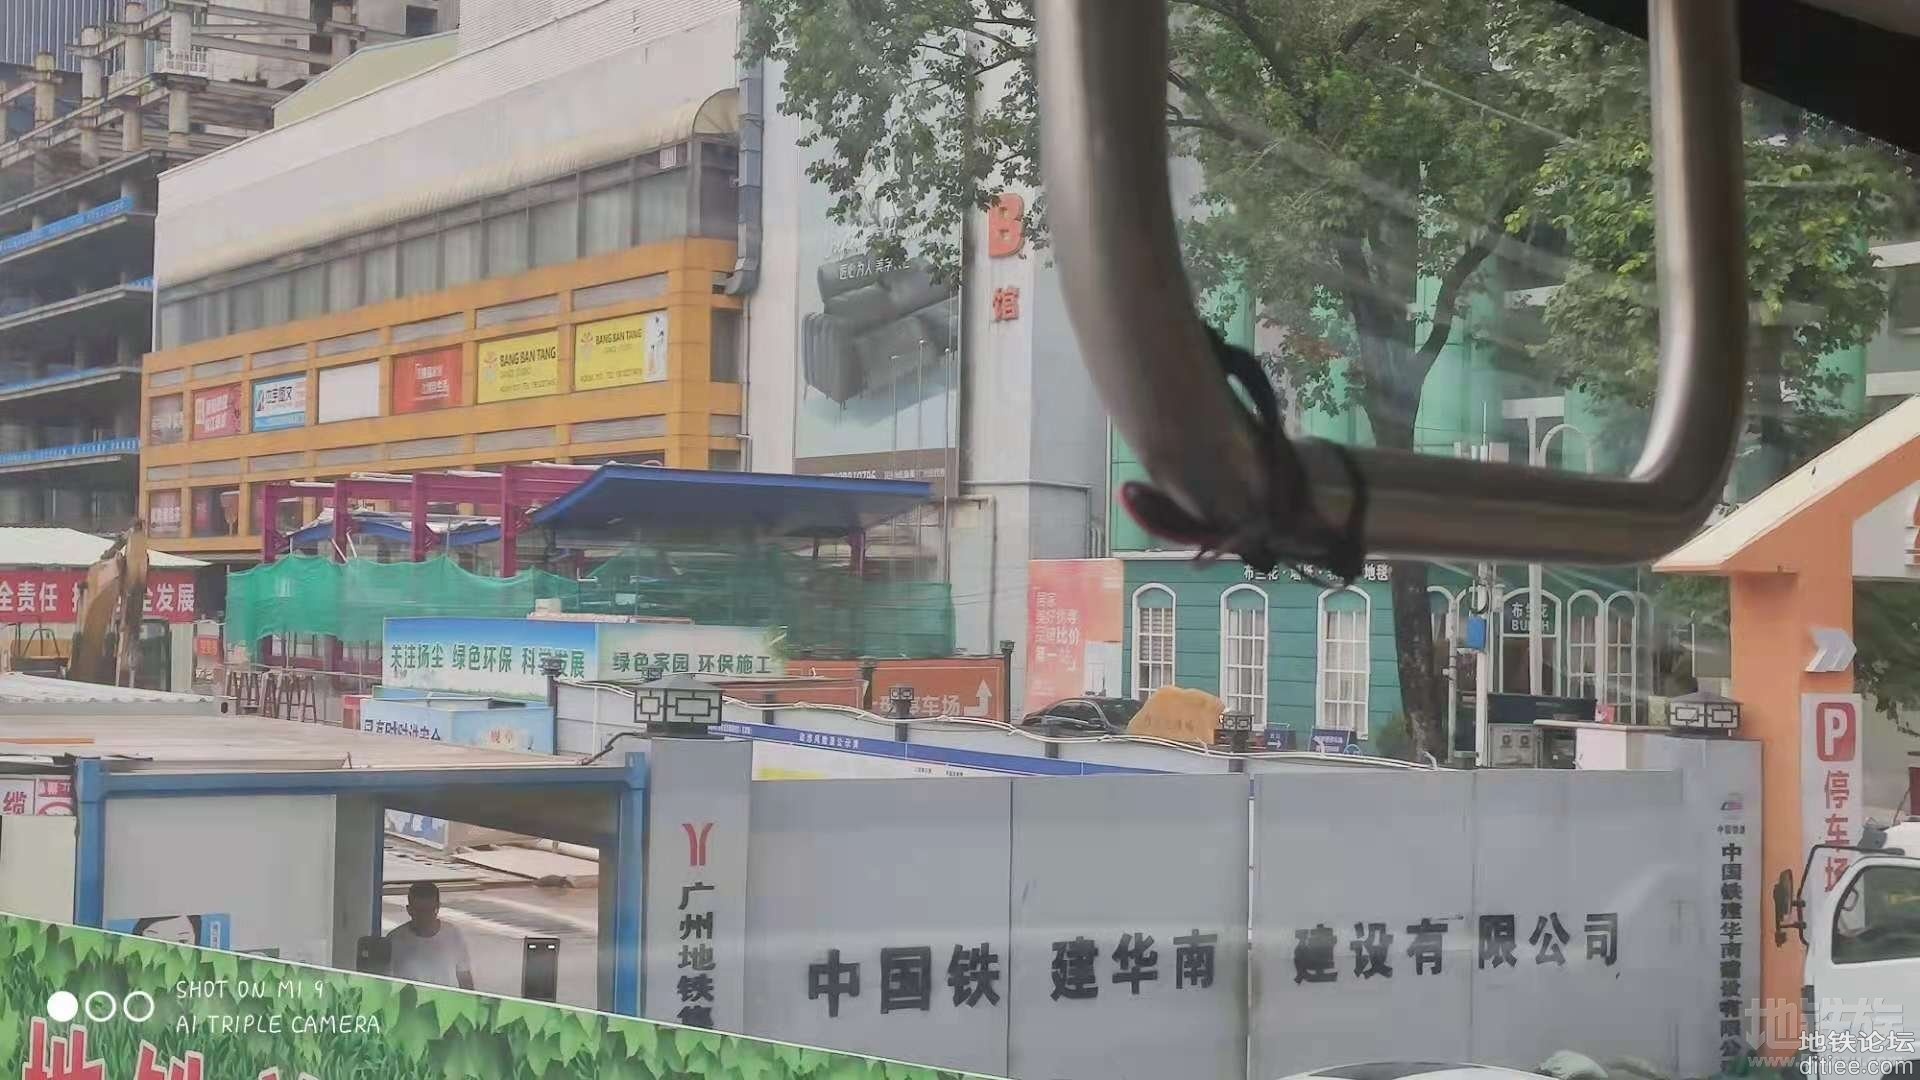 [转]广州地铁18号线冼村维加思广场处出口飞顶成型